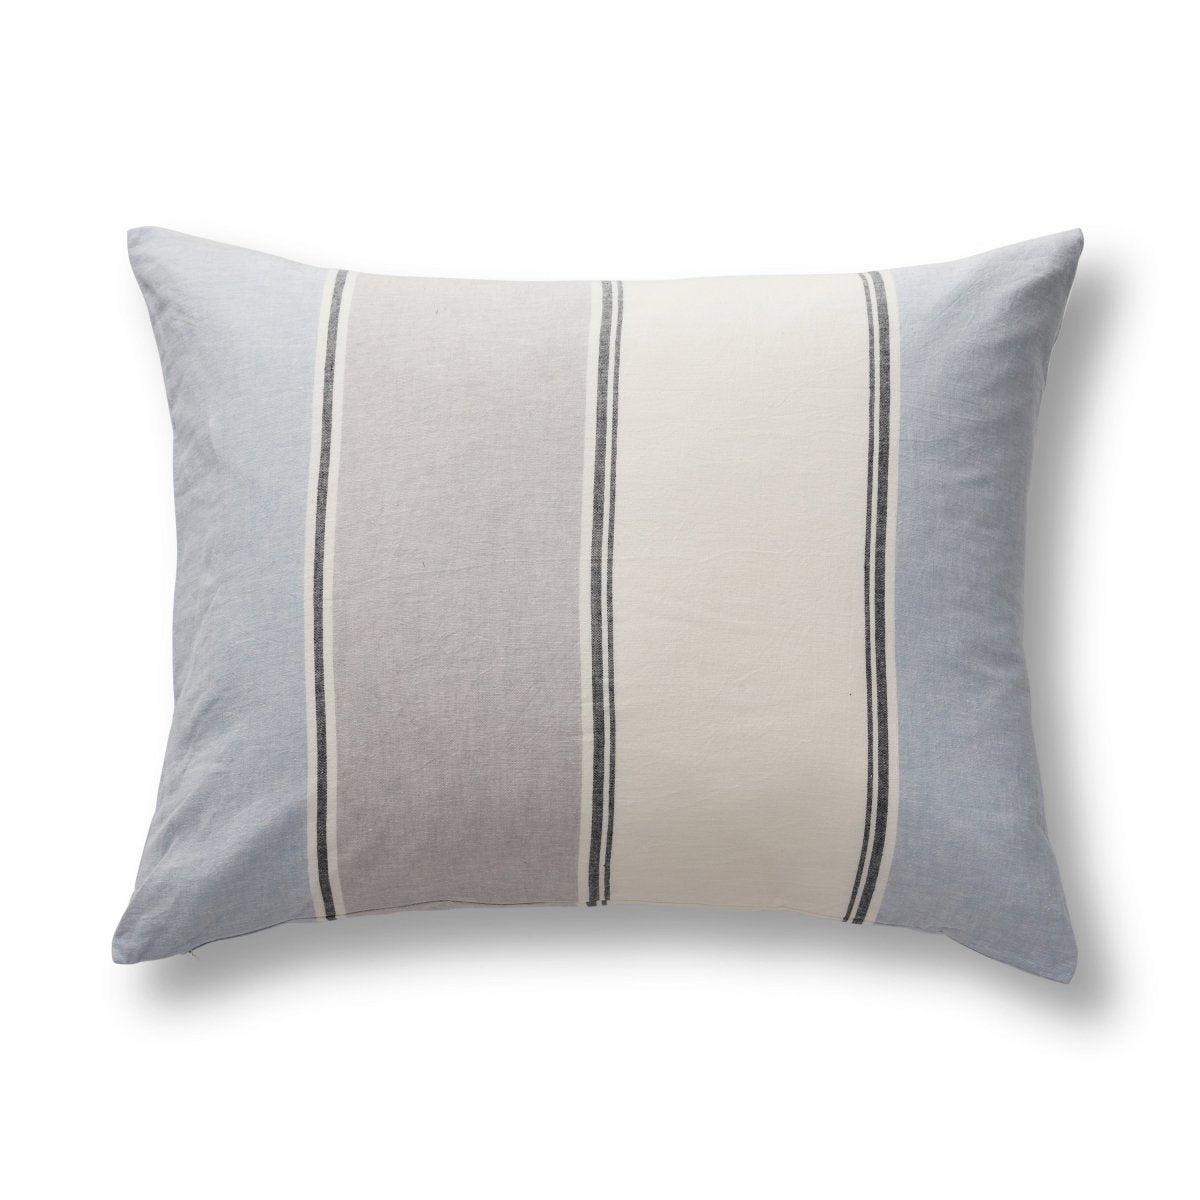 Pillow Sham - Schooner Duvet Set in Blue, White and Grey | Ann Gish Art of Home Bedding